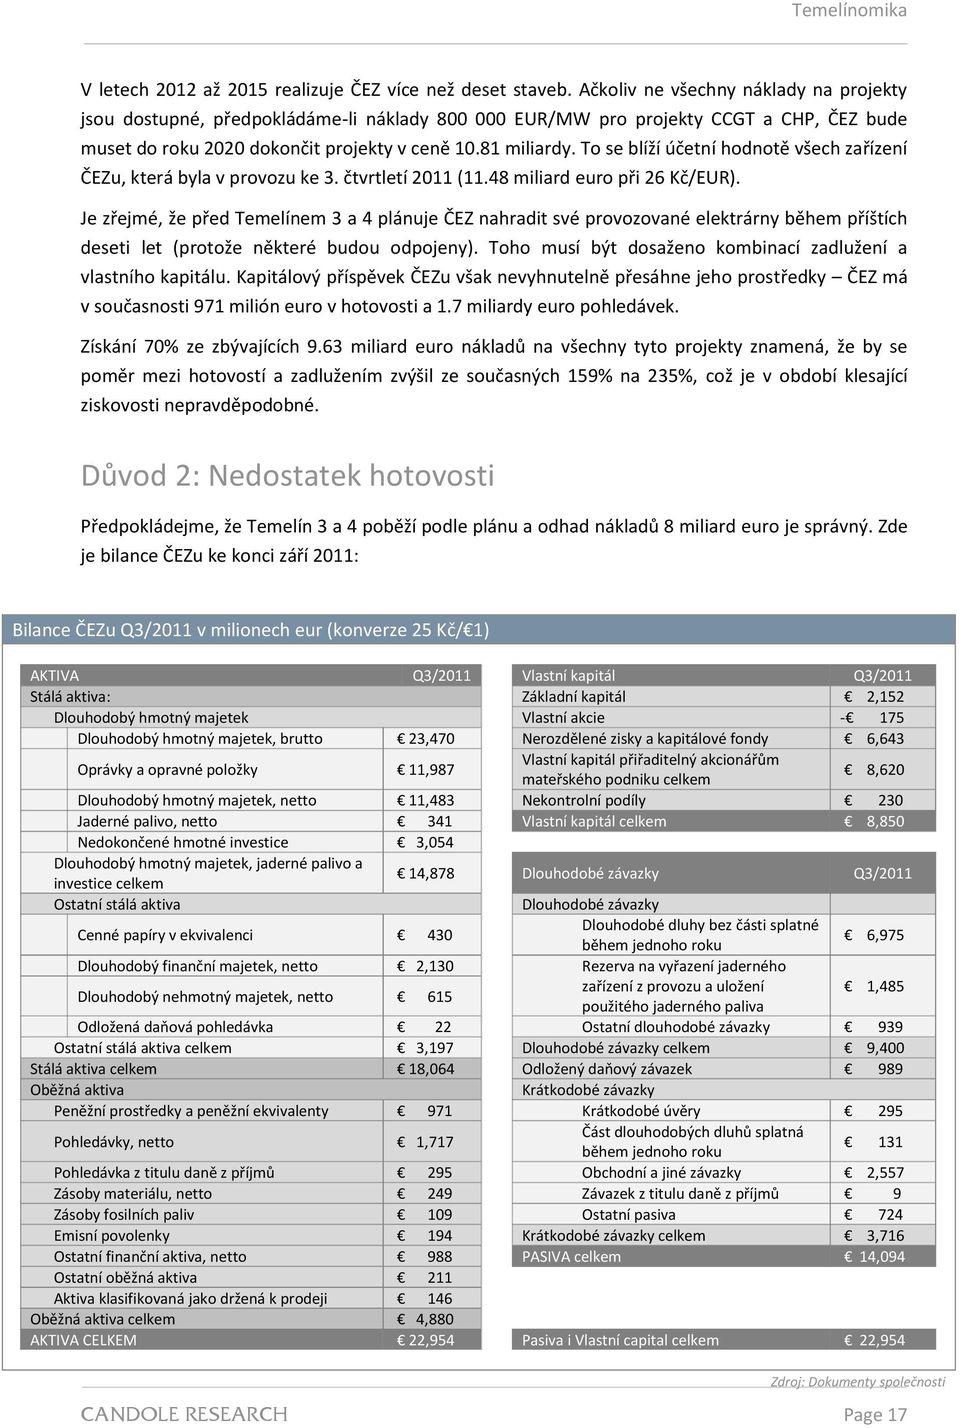 To se blíží účetní hodnotě všech zařízení ČEZu, která byla v provozu ke 3. čtvrtletí 2011 (11.48 miliard euro při 26 Kč/EUR).